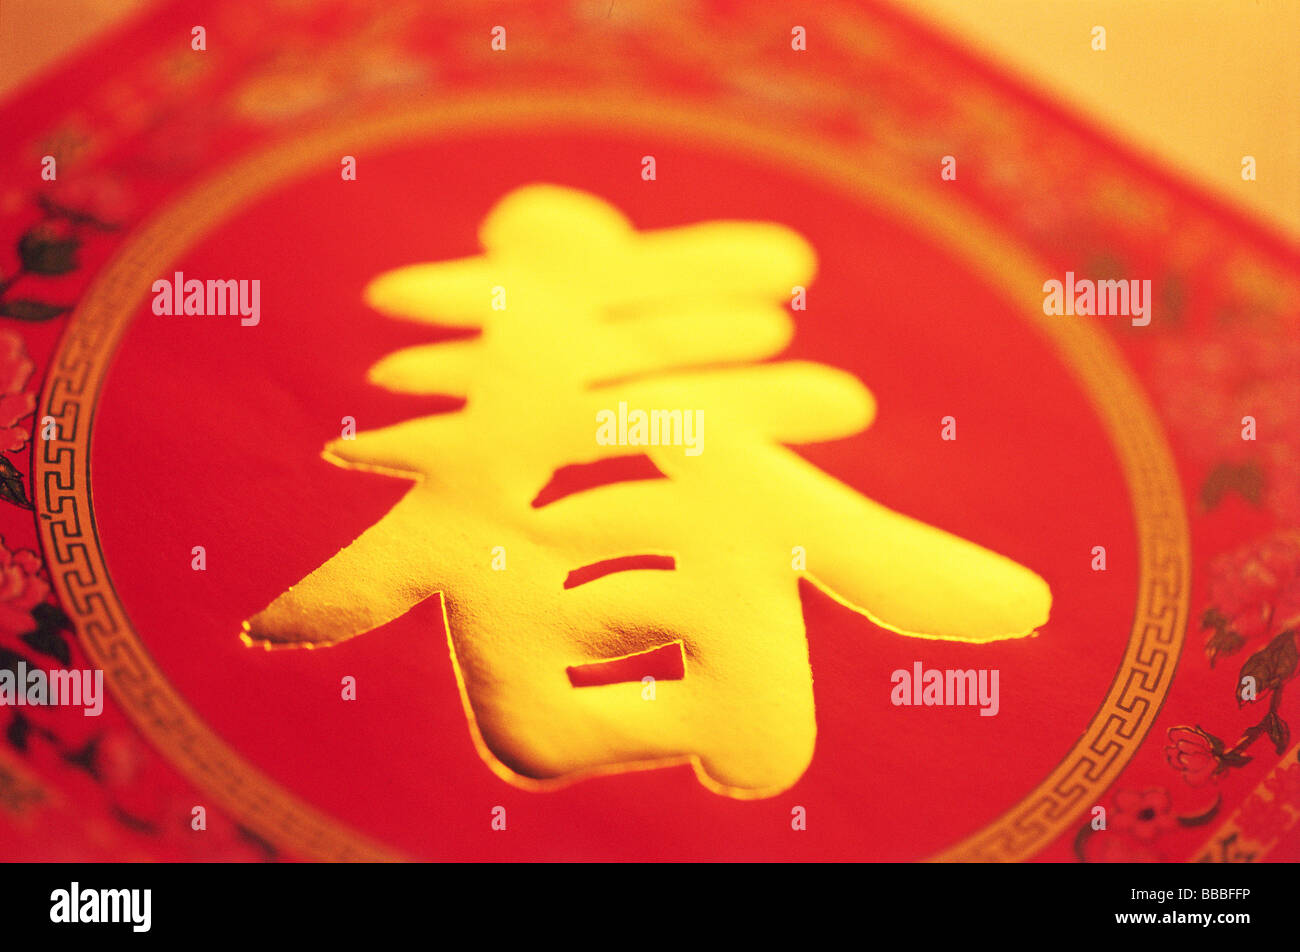 Caractère chinois signifiant "printemps" (prononcé 'Chun') Banque D'Images